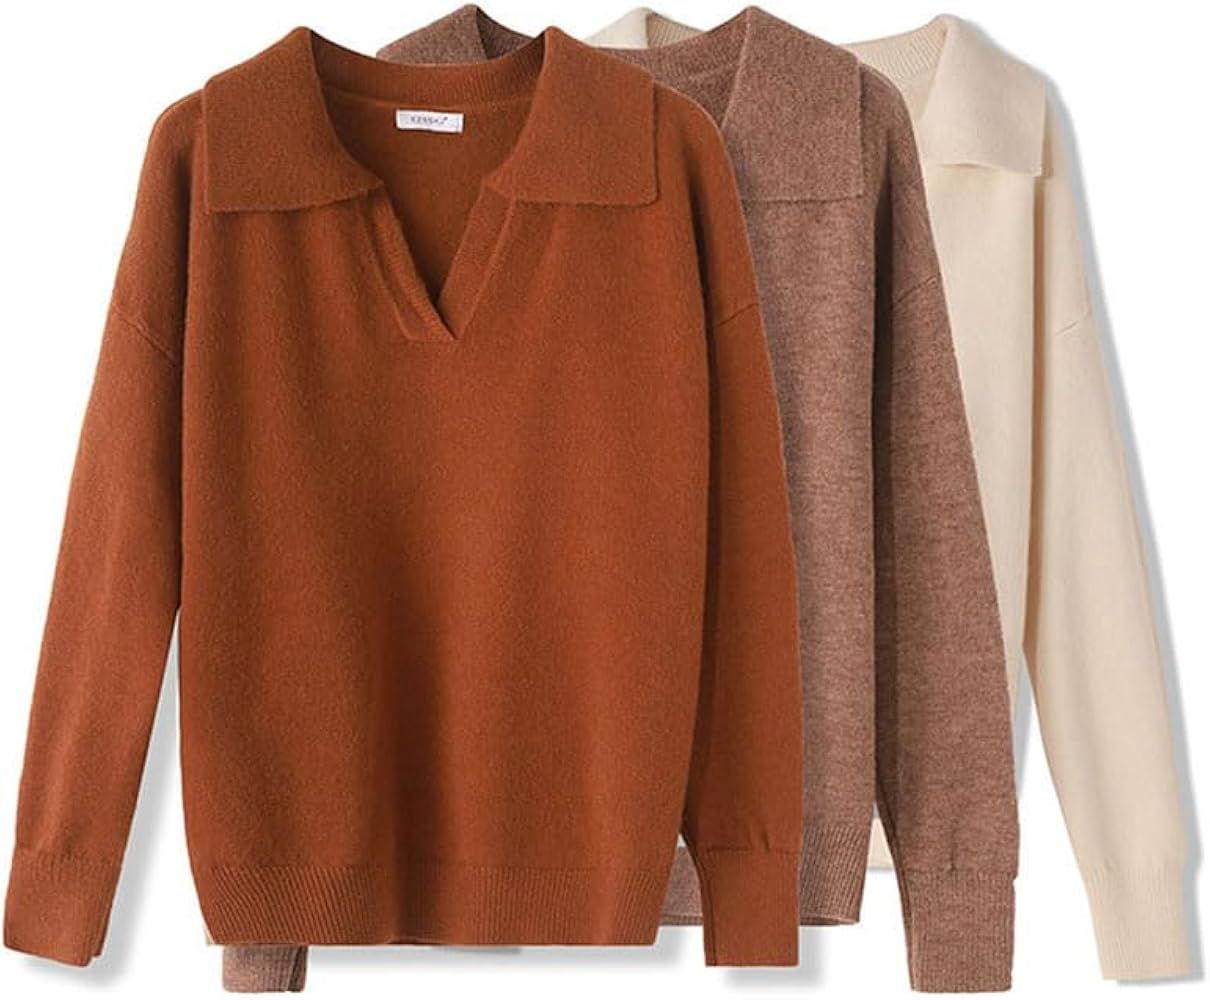 MAFSMJP Autumn Winter Sweater Pullovers Women Loose Thick Cashmere Sweater Pullover Women Sweater... | Amazon (US)